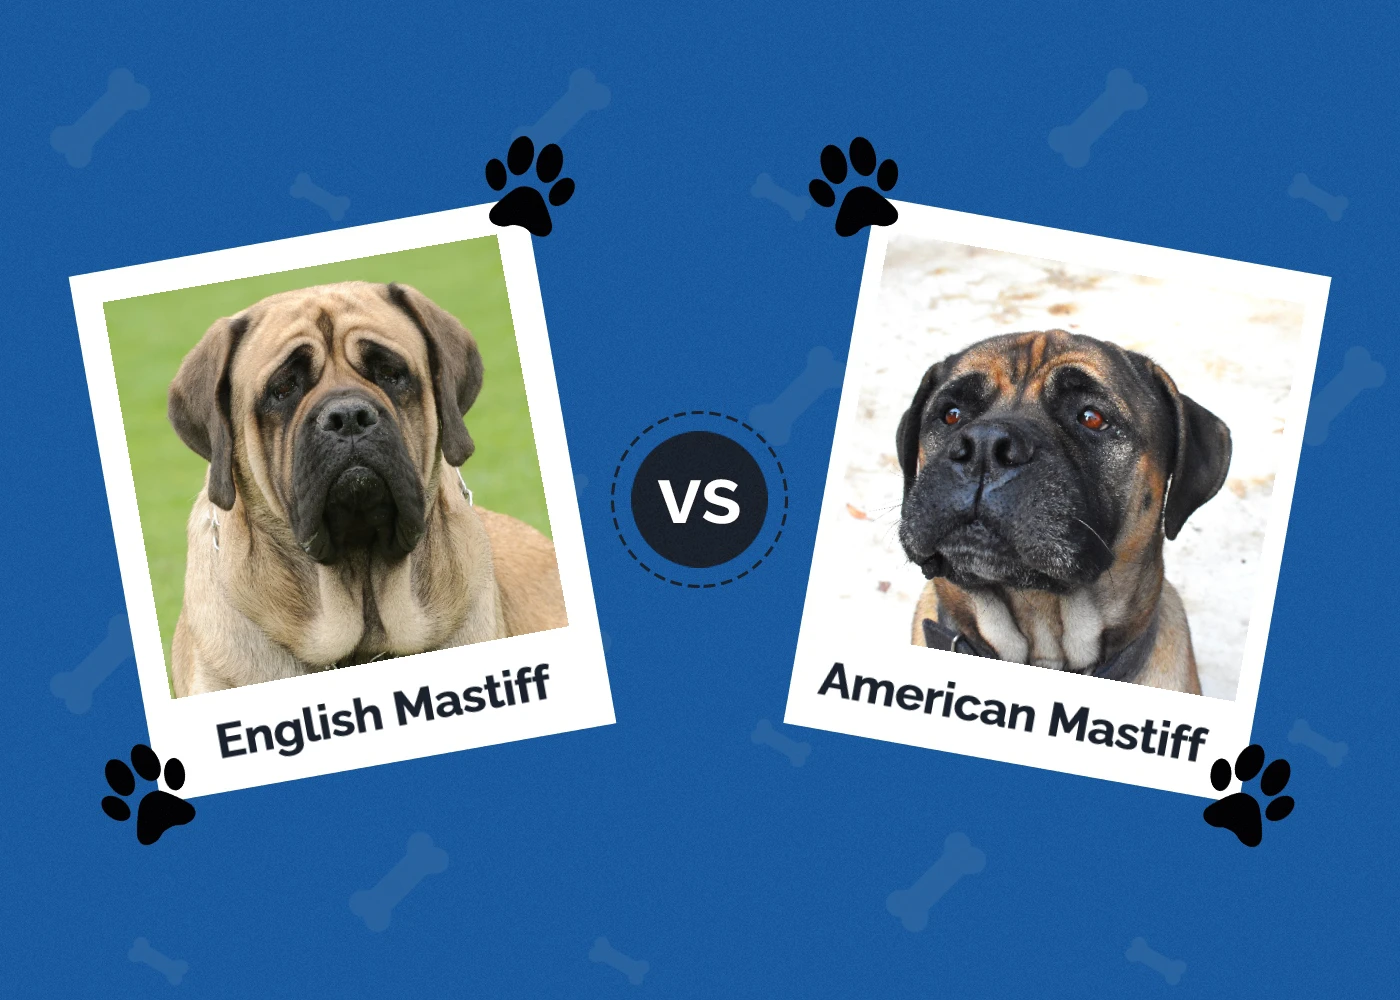 English Mastiff vs American Mastiff - Featured Image